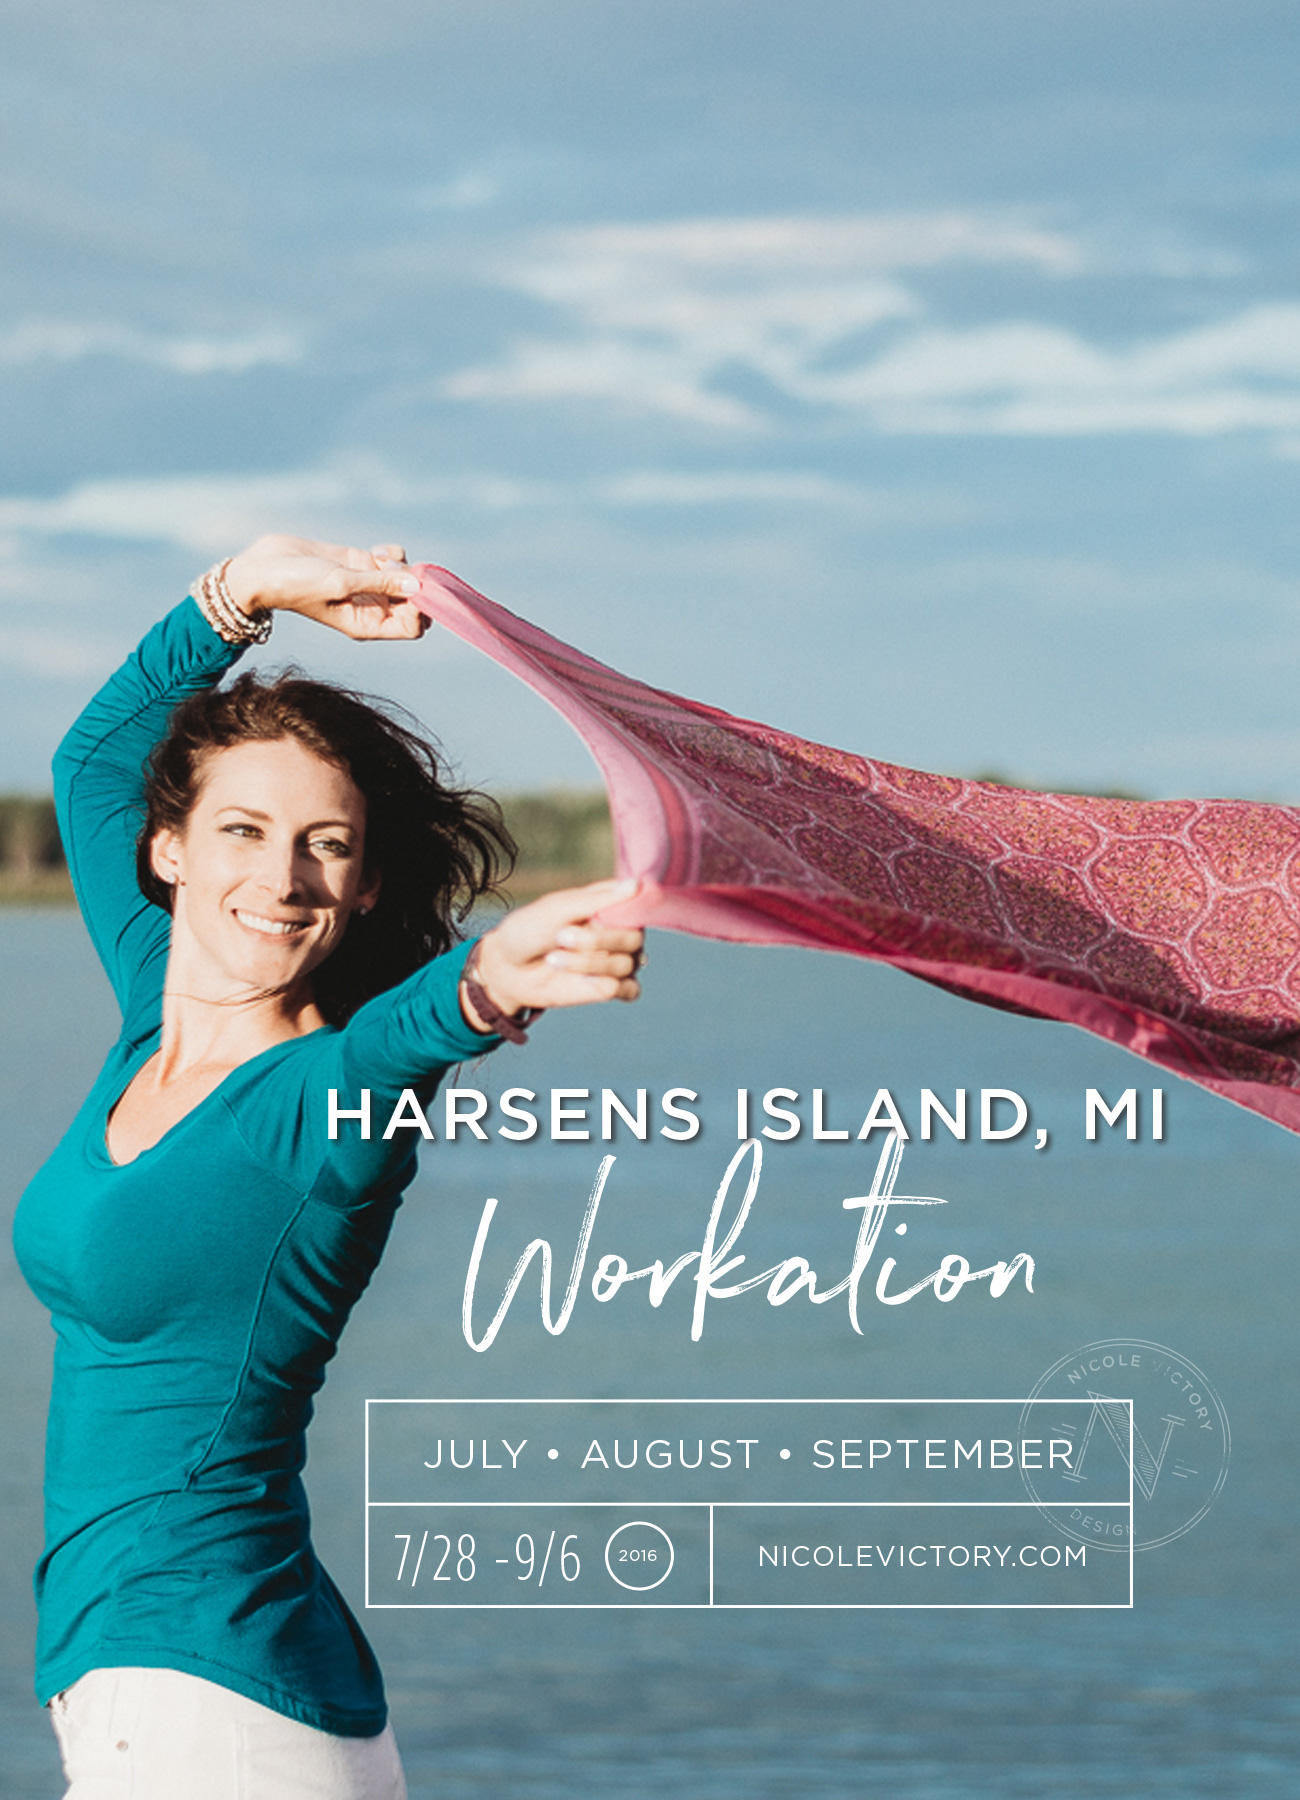 Harsens Island Workation 2016 | Nicole Victory Design